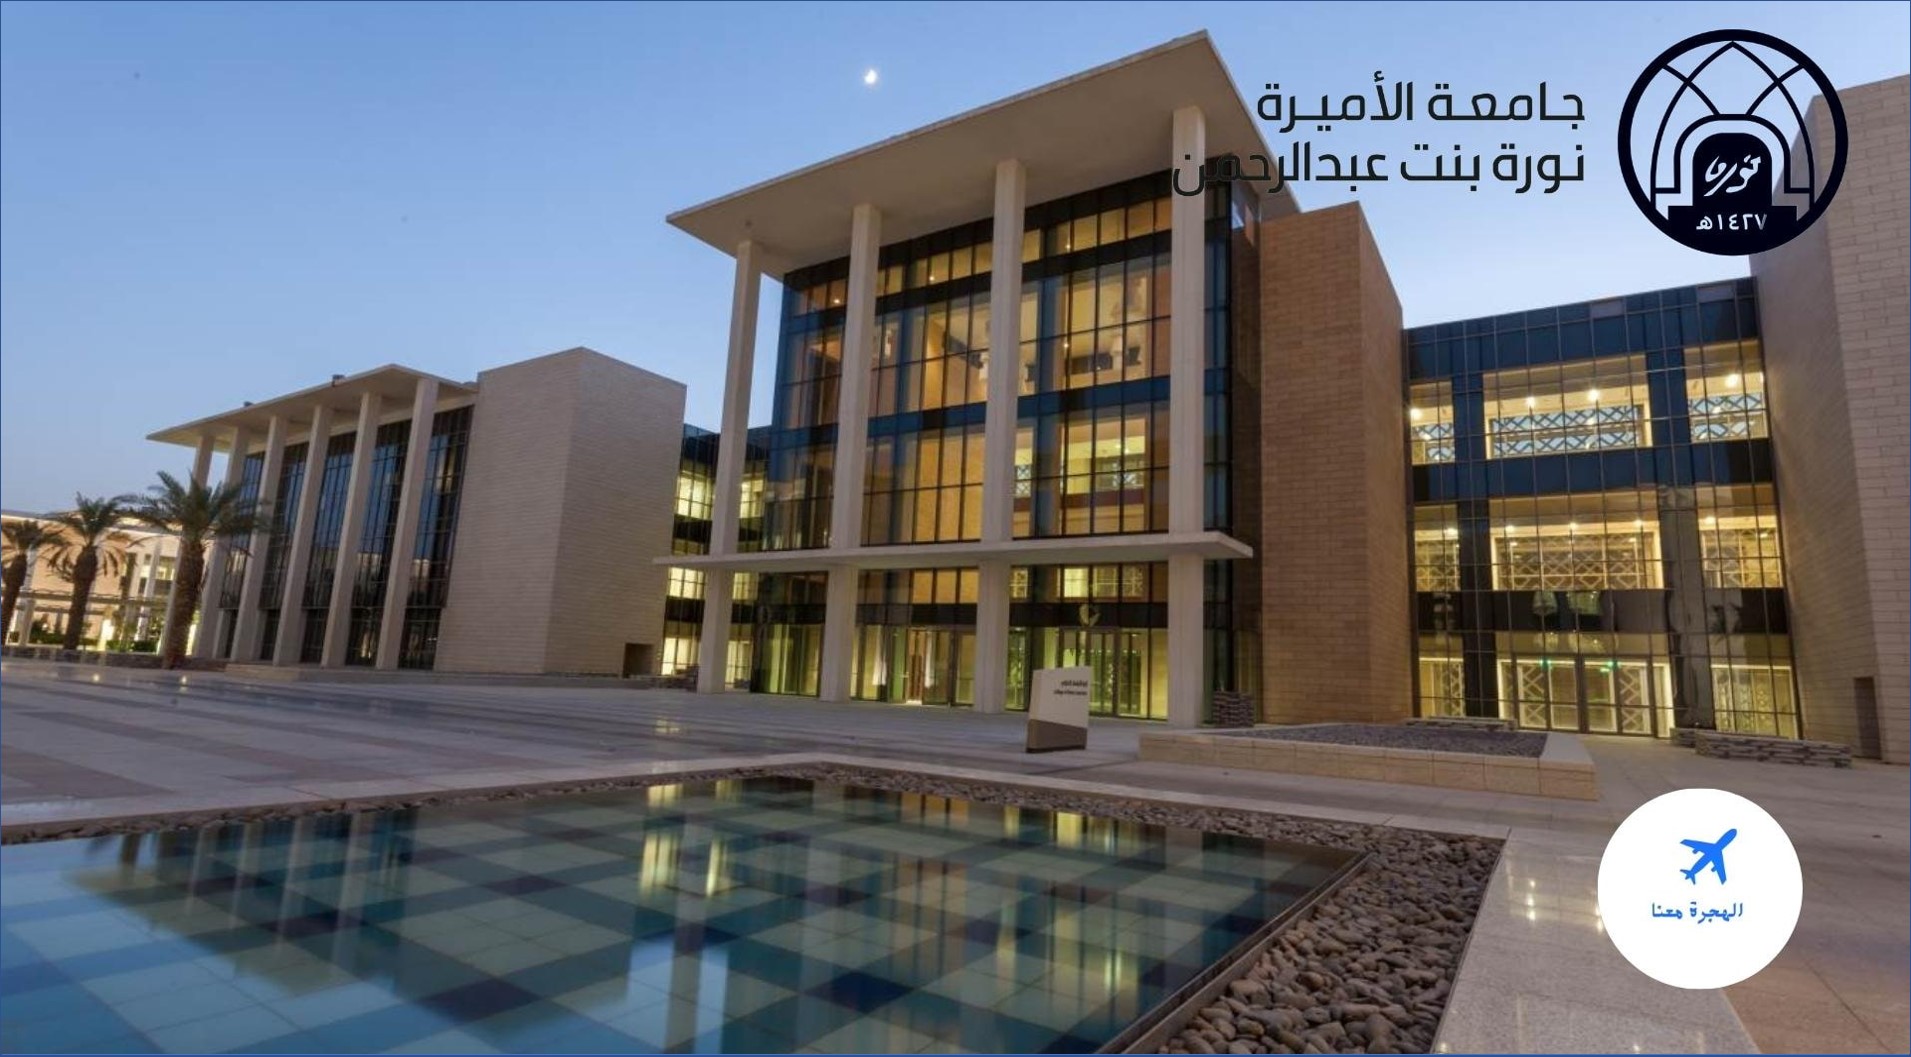 جامعة الأميرة نورة تعلن عن وظائفها الأكاديمية للنساء فقط